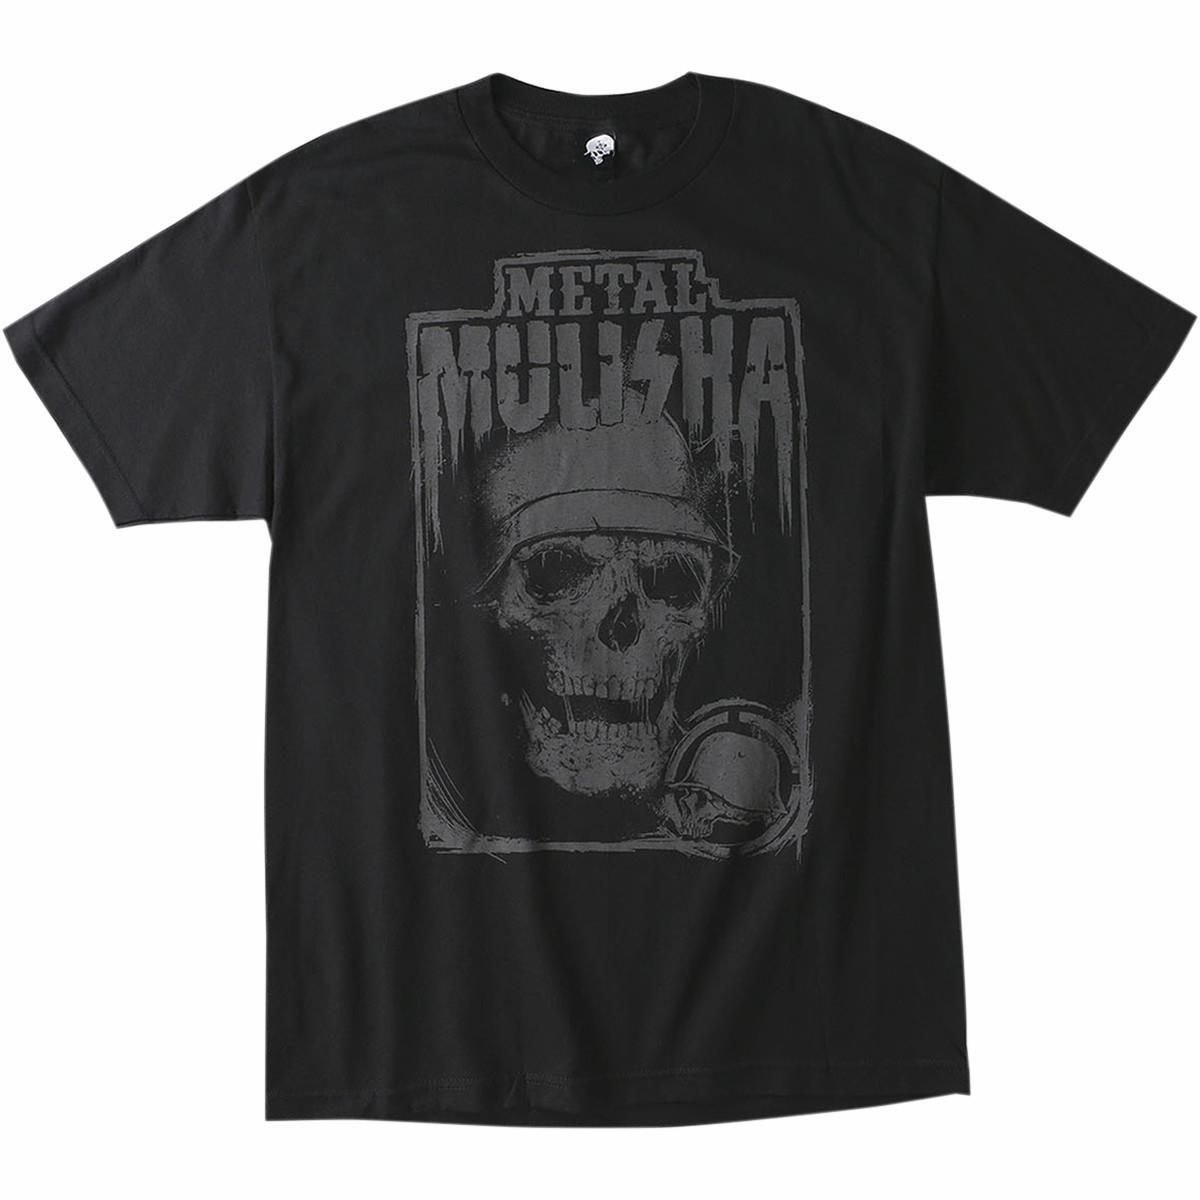 Metal Mulisha Stalker T-Shirt - M155S18124BLKL | Partzilla.com